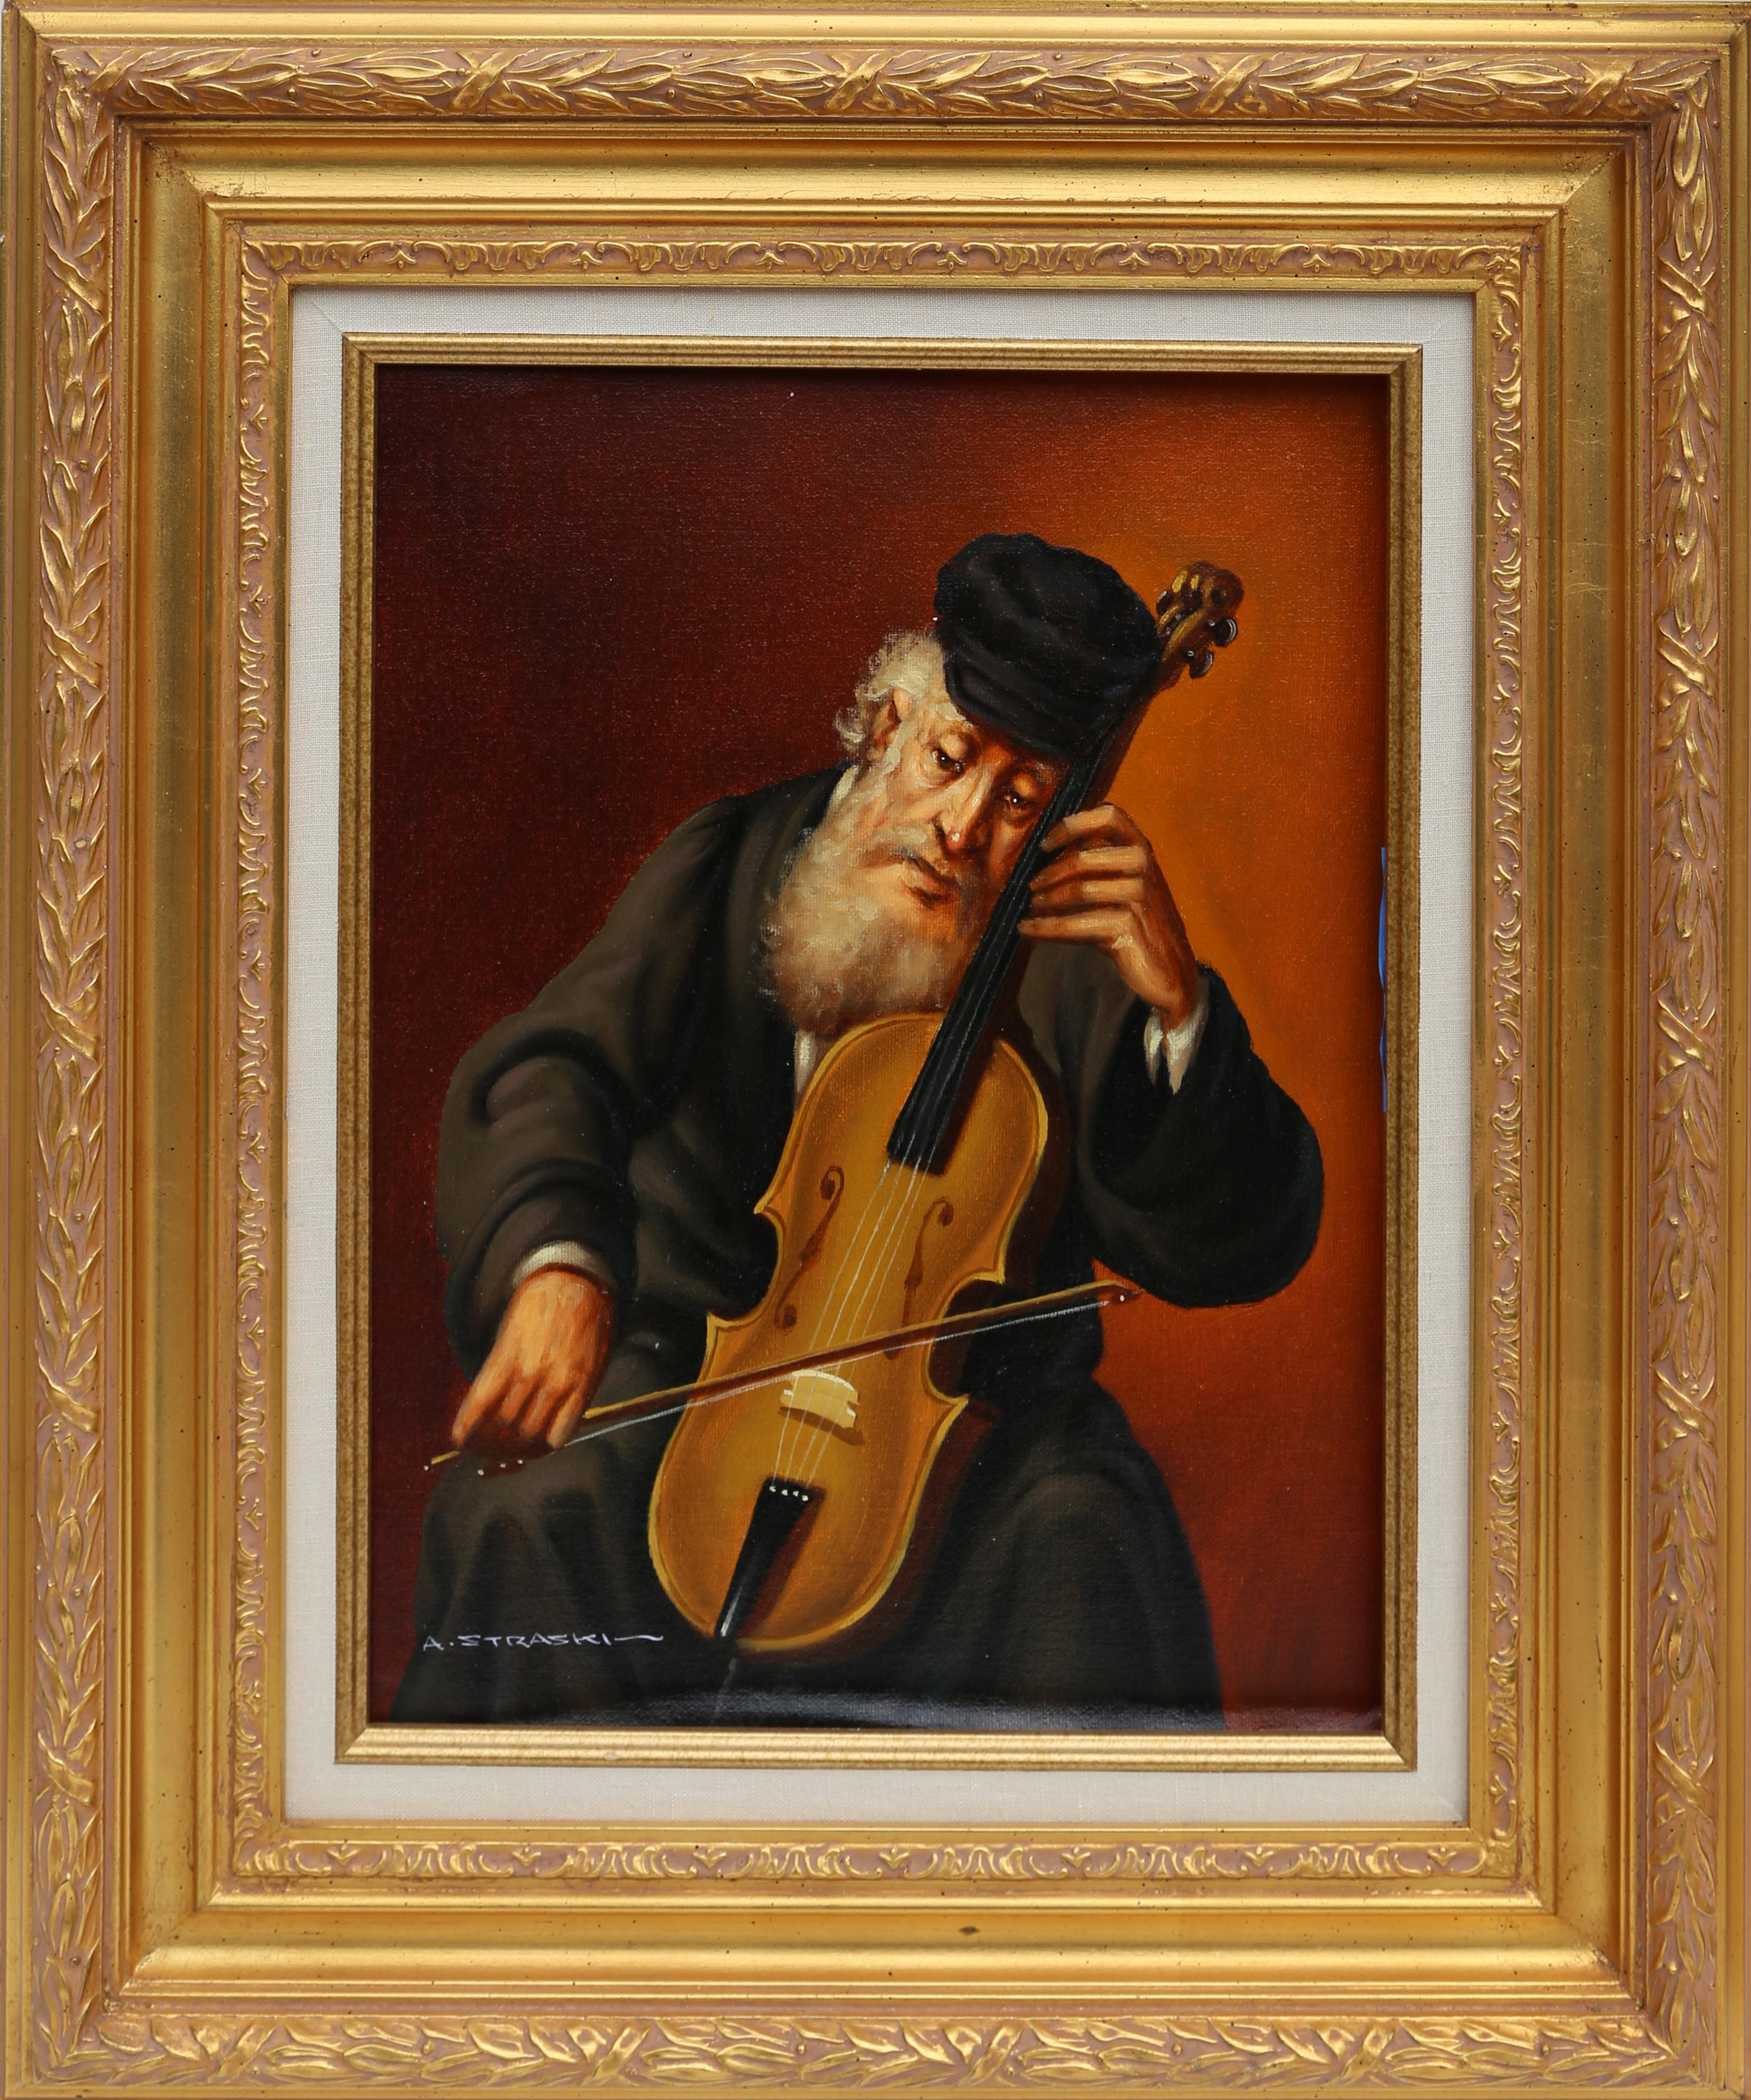 Homme juif jouant du violon (3-F)
Abraham Straski, polonais (1903-1987)
Date : 1952
Huile sur toile, signée et datée
Taille : 40,64 x 29,21 cm (16 x 11,5 in)
Taille du cadre : 24 x 19.5 pouces